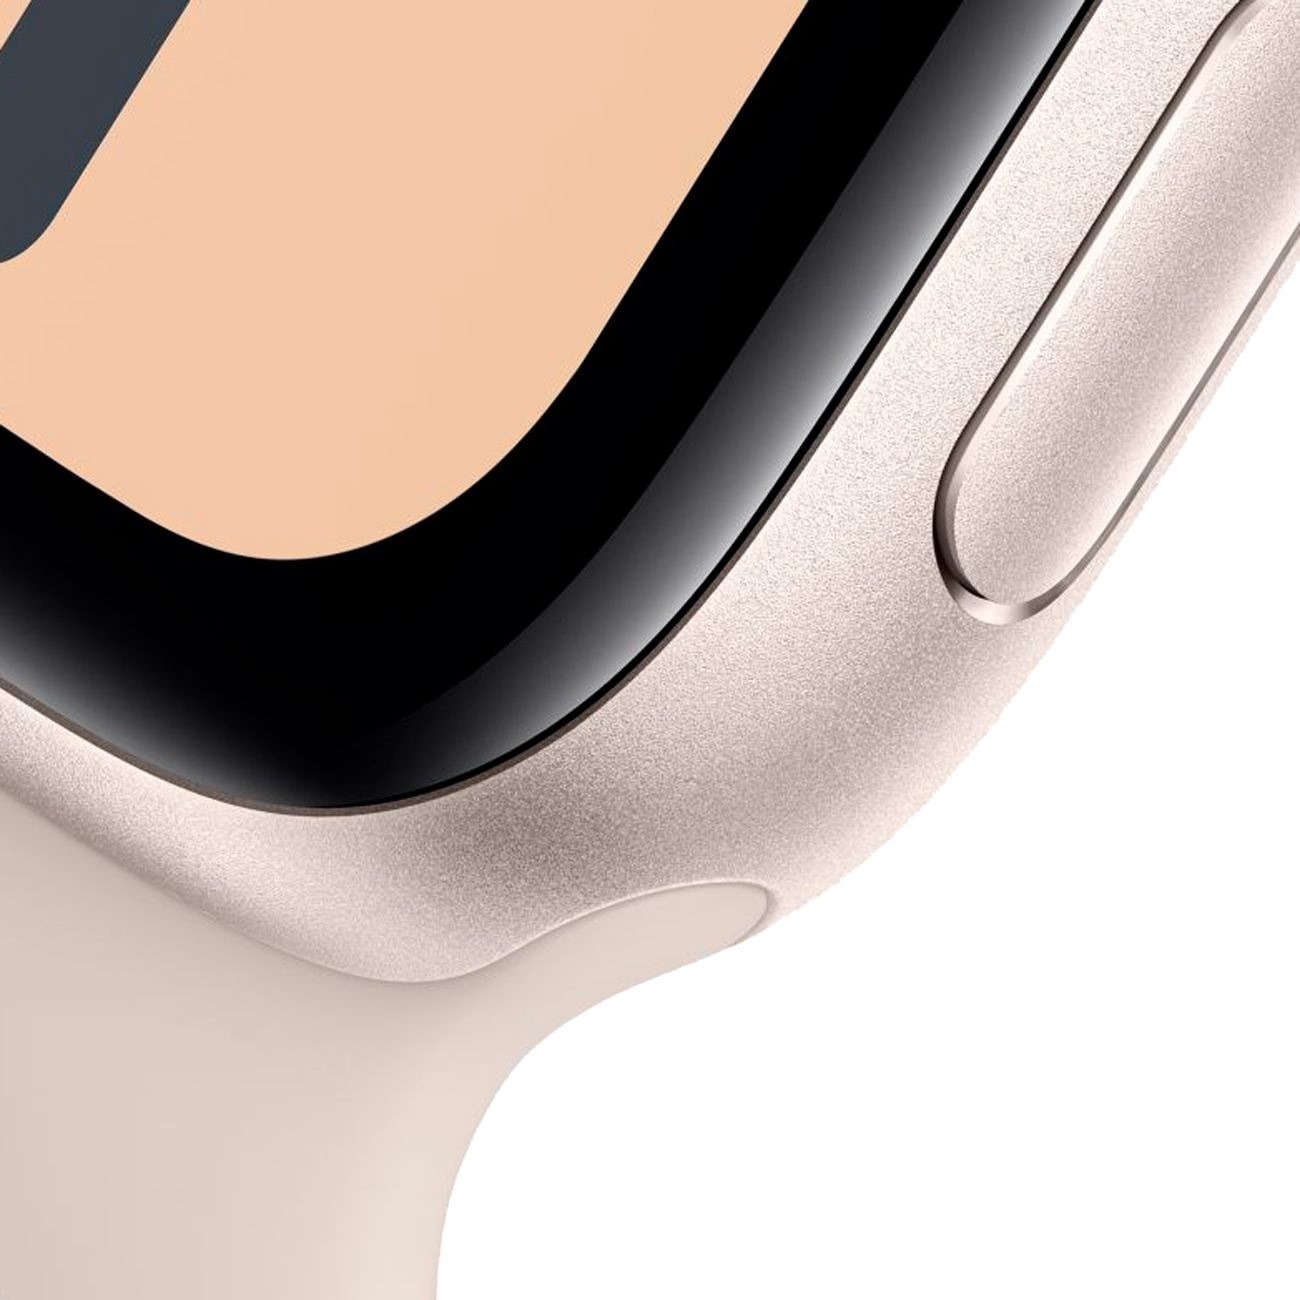 Купить смарт-часы apple watch se 40mm starlight aluminum 2023 Apple Watch SE 2023 в официальном магазине Apple, Samsung, Xiaomi. iPixel.ru Купить, заказ, кредит, рассрочка, отзывы,  характеристики, цена,  фотографии, в подарок.